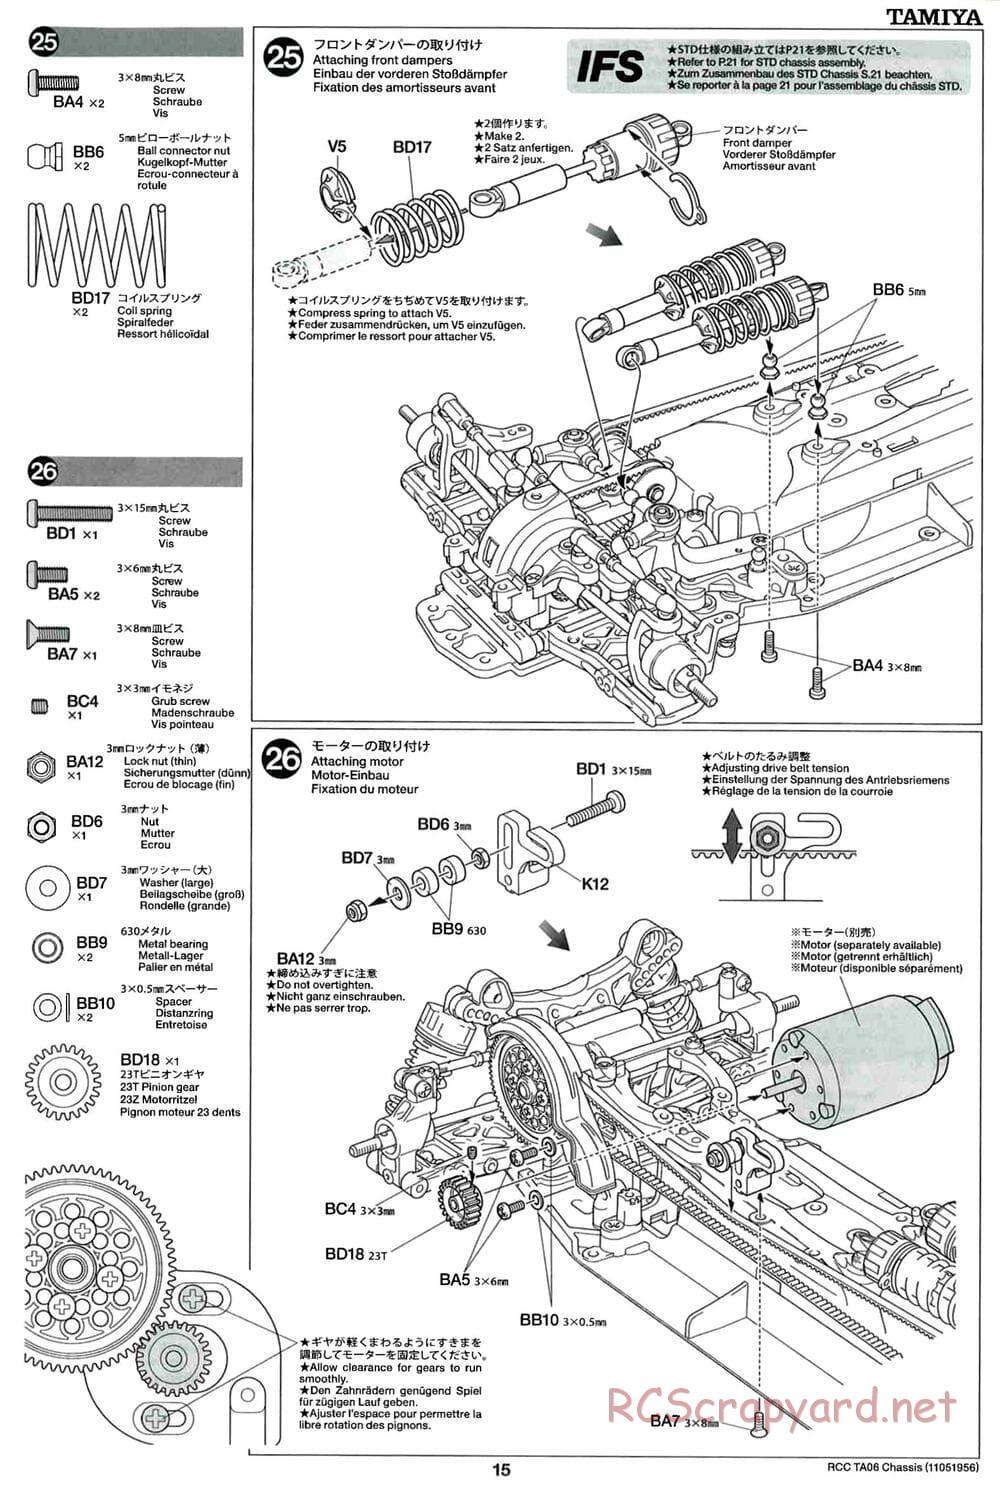 Tamiya - TA06 Chassis - Manual - Page 15